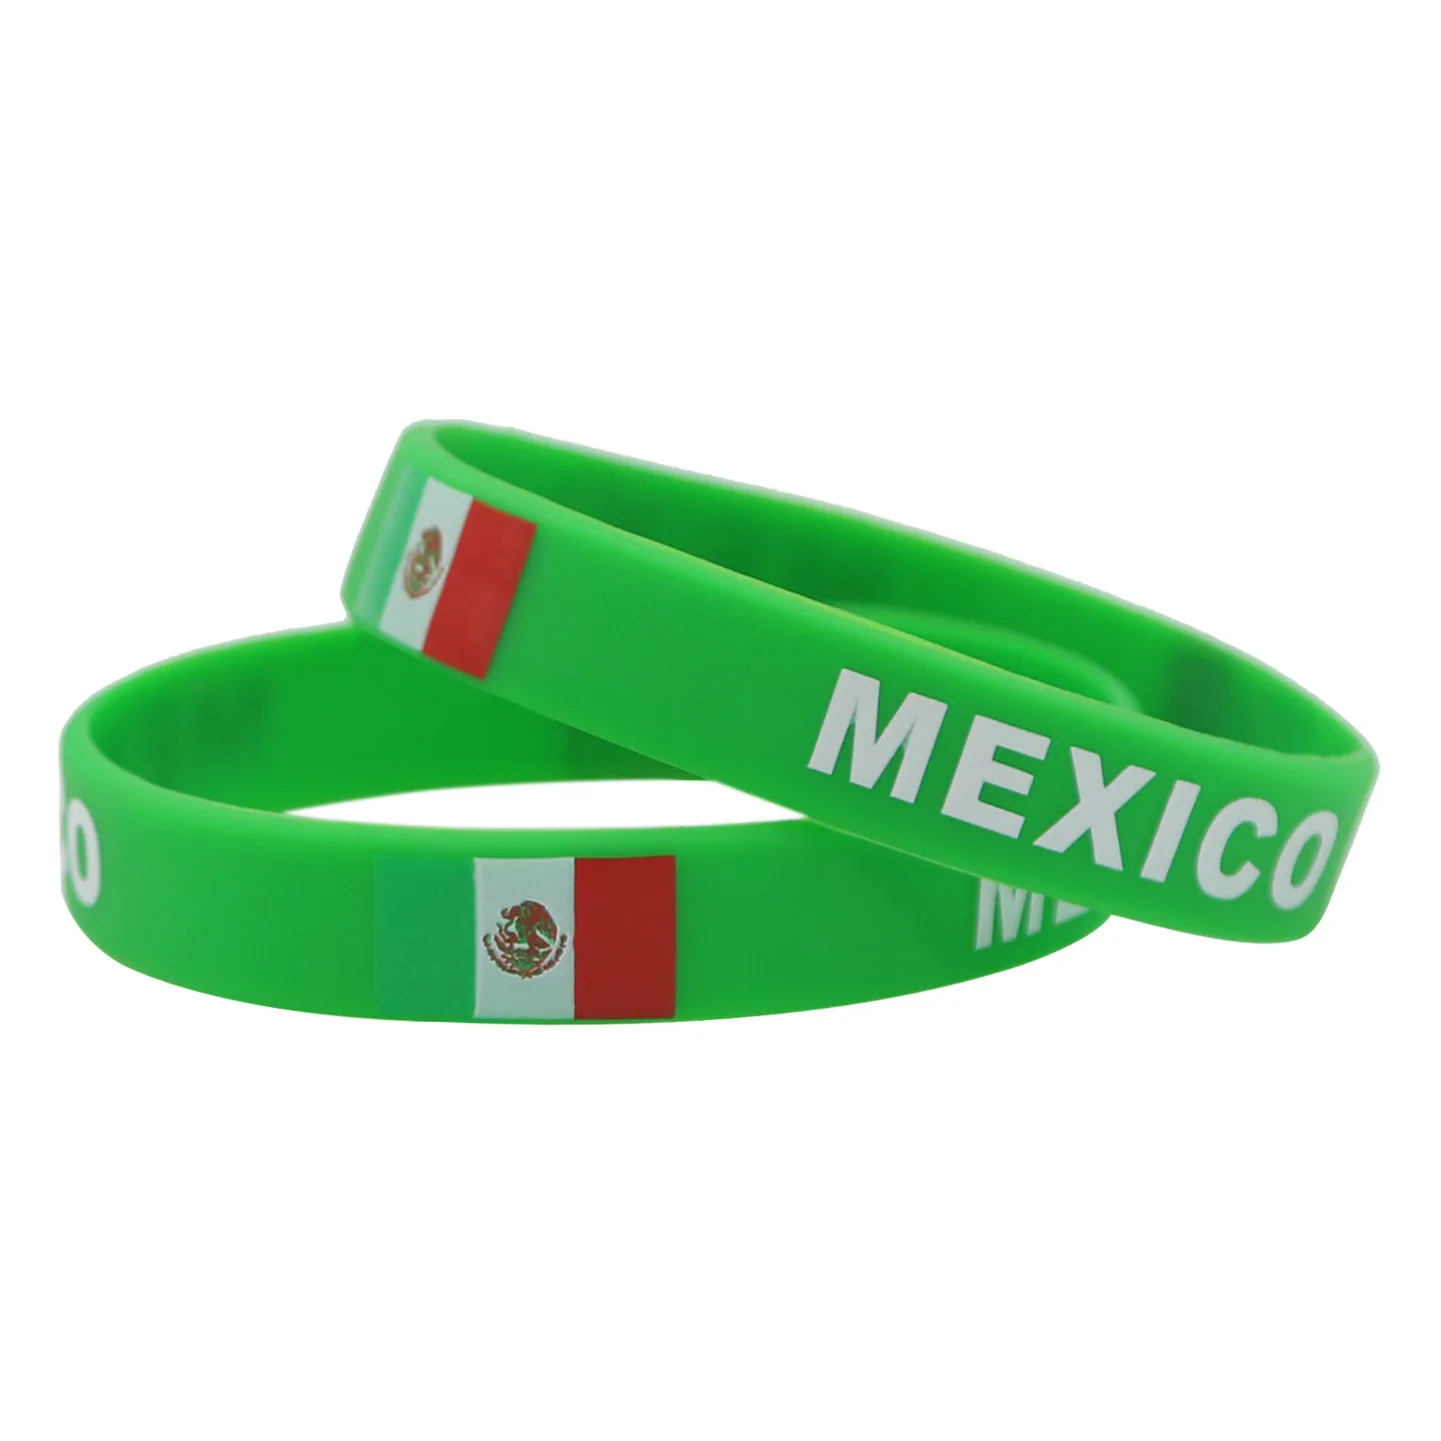 緑色メキシコサッカーバスケットボール国旗シリコンブレスレットリストバンド安いカスタム Buy 格安カスタムシリコンブレスレット メキシコ旗ブレスレット 世の中カップブレスレット Product On Alibaba Com